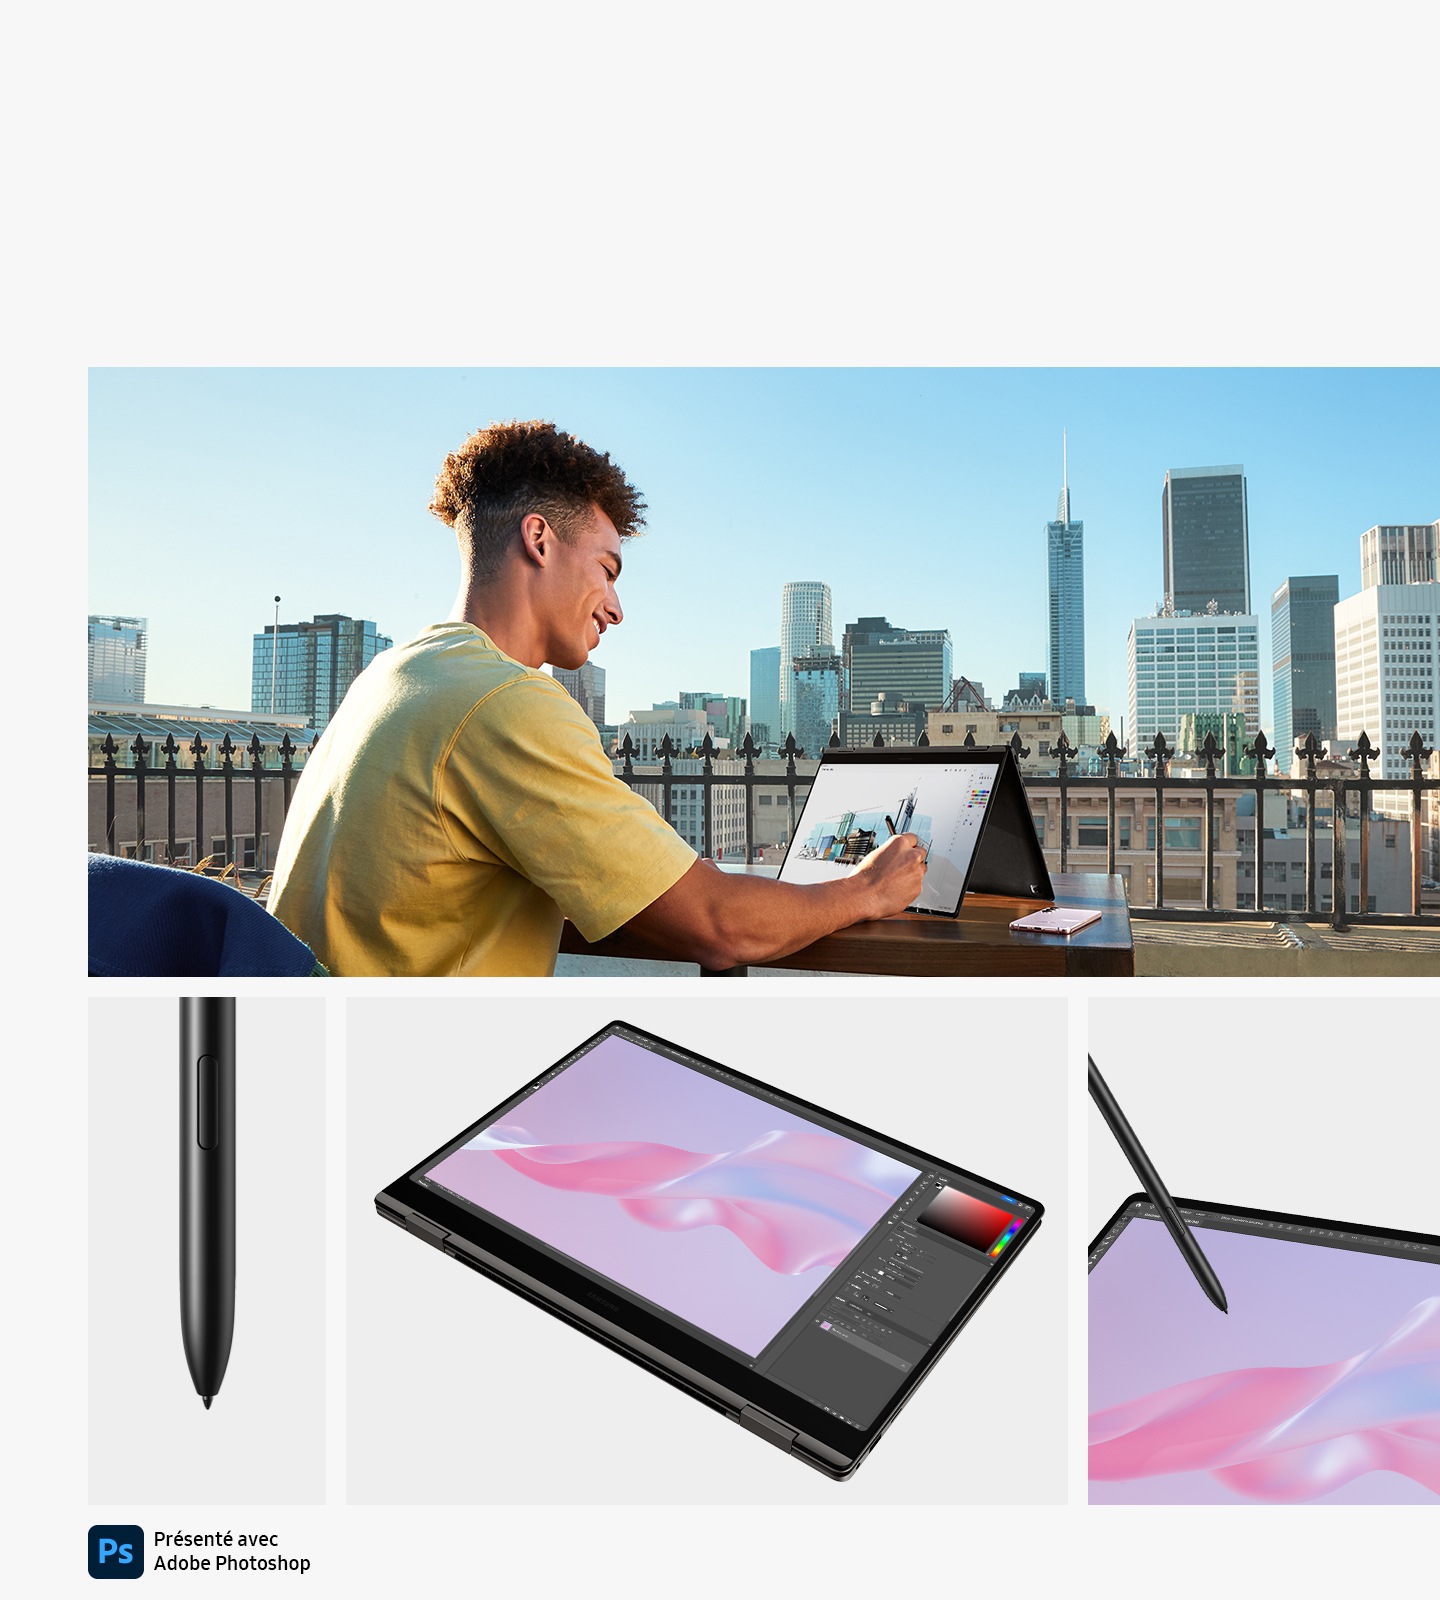 בחור צעיר שיושב על מרפסת חיצונית עם נוף לעיר משתמש ב- Anthracite Galaxy Book3 Pro 360, מקופל כמו אוהל, עם העט P ו- Galaxy S23+ המונחים ליד המחשב הנייד. להלן, תוכלו לראות מקרוב של ה- S PEN, Galaxy Book3 Pro 360 בצבע אנתרציט מקופל במצב טאבלט עם Adobe Photoshop פתוח למסך ותוכנית גדולה של Galaxy Book3 Pro 360 כאשר העט נוגע במסך ו הלוגו של Adobe Photoshop מוצג